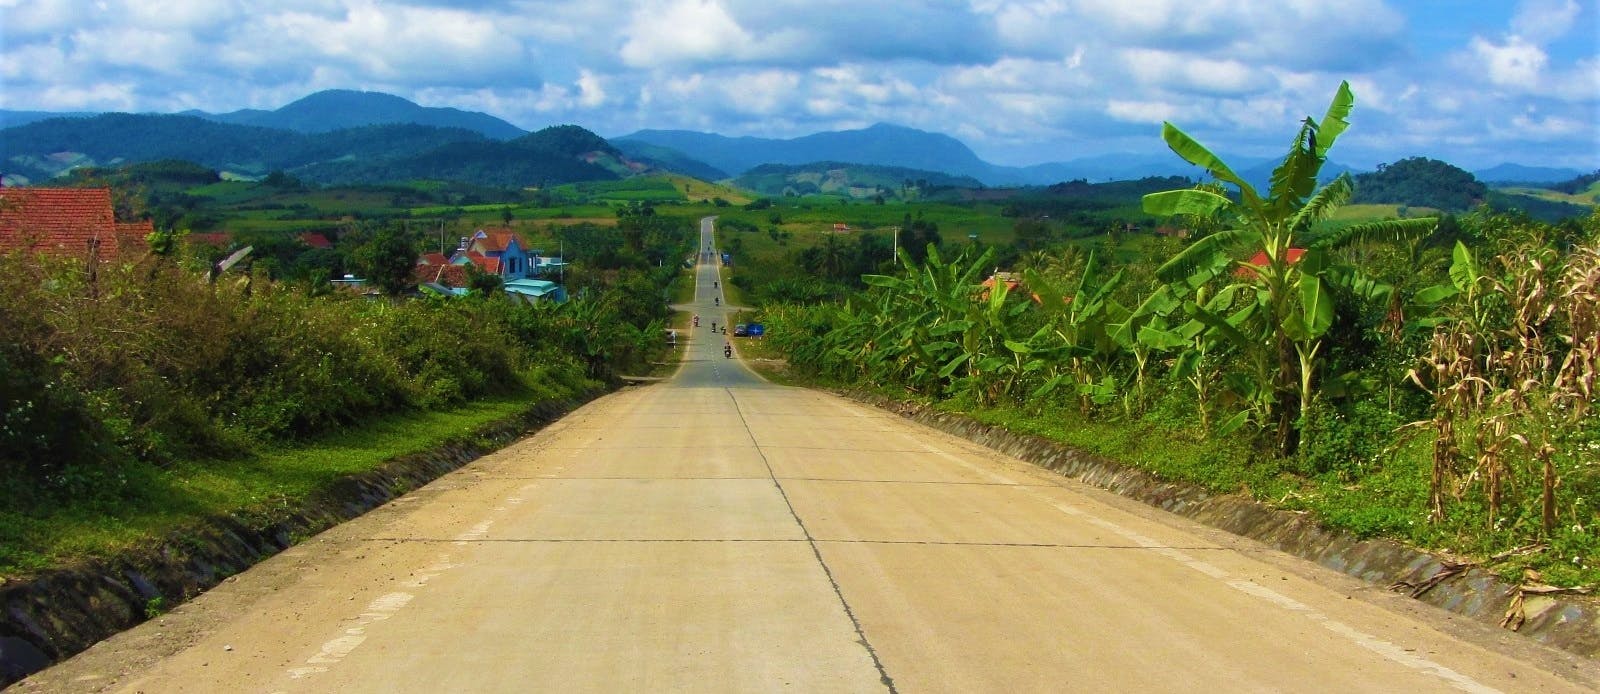 The Road East of the Long Mountains (Đường Trường Sơn Đông), Vietnam)